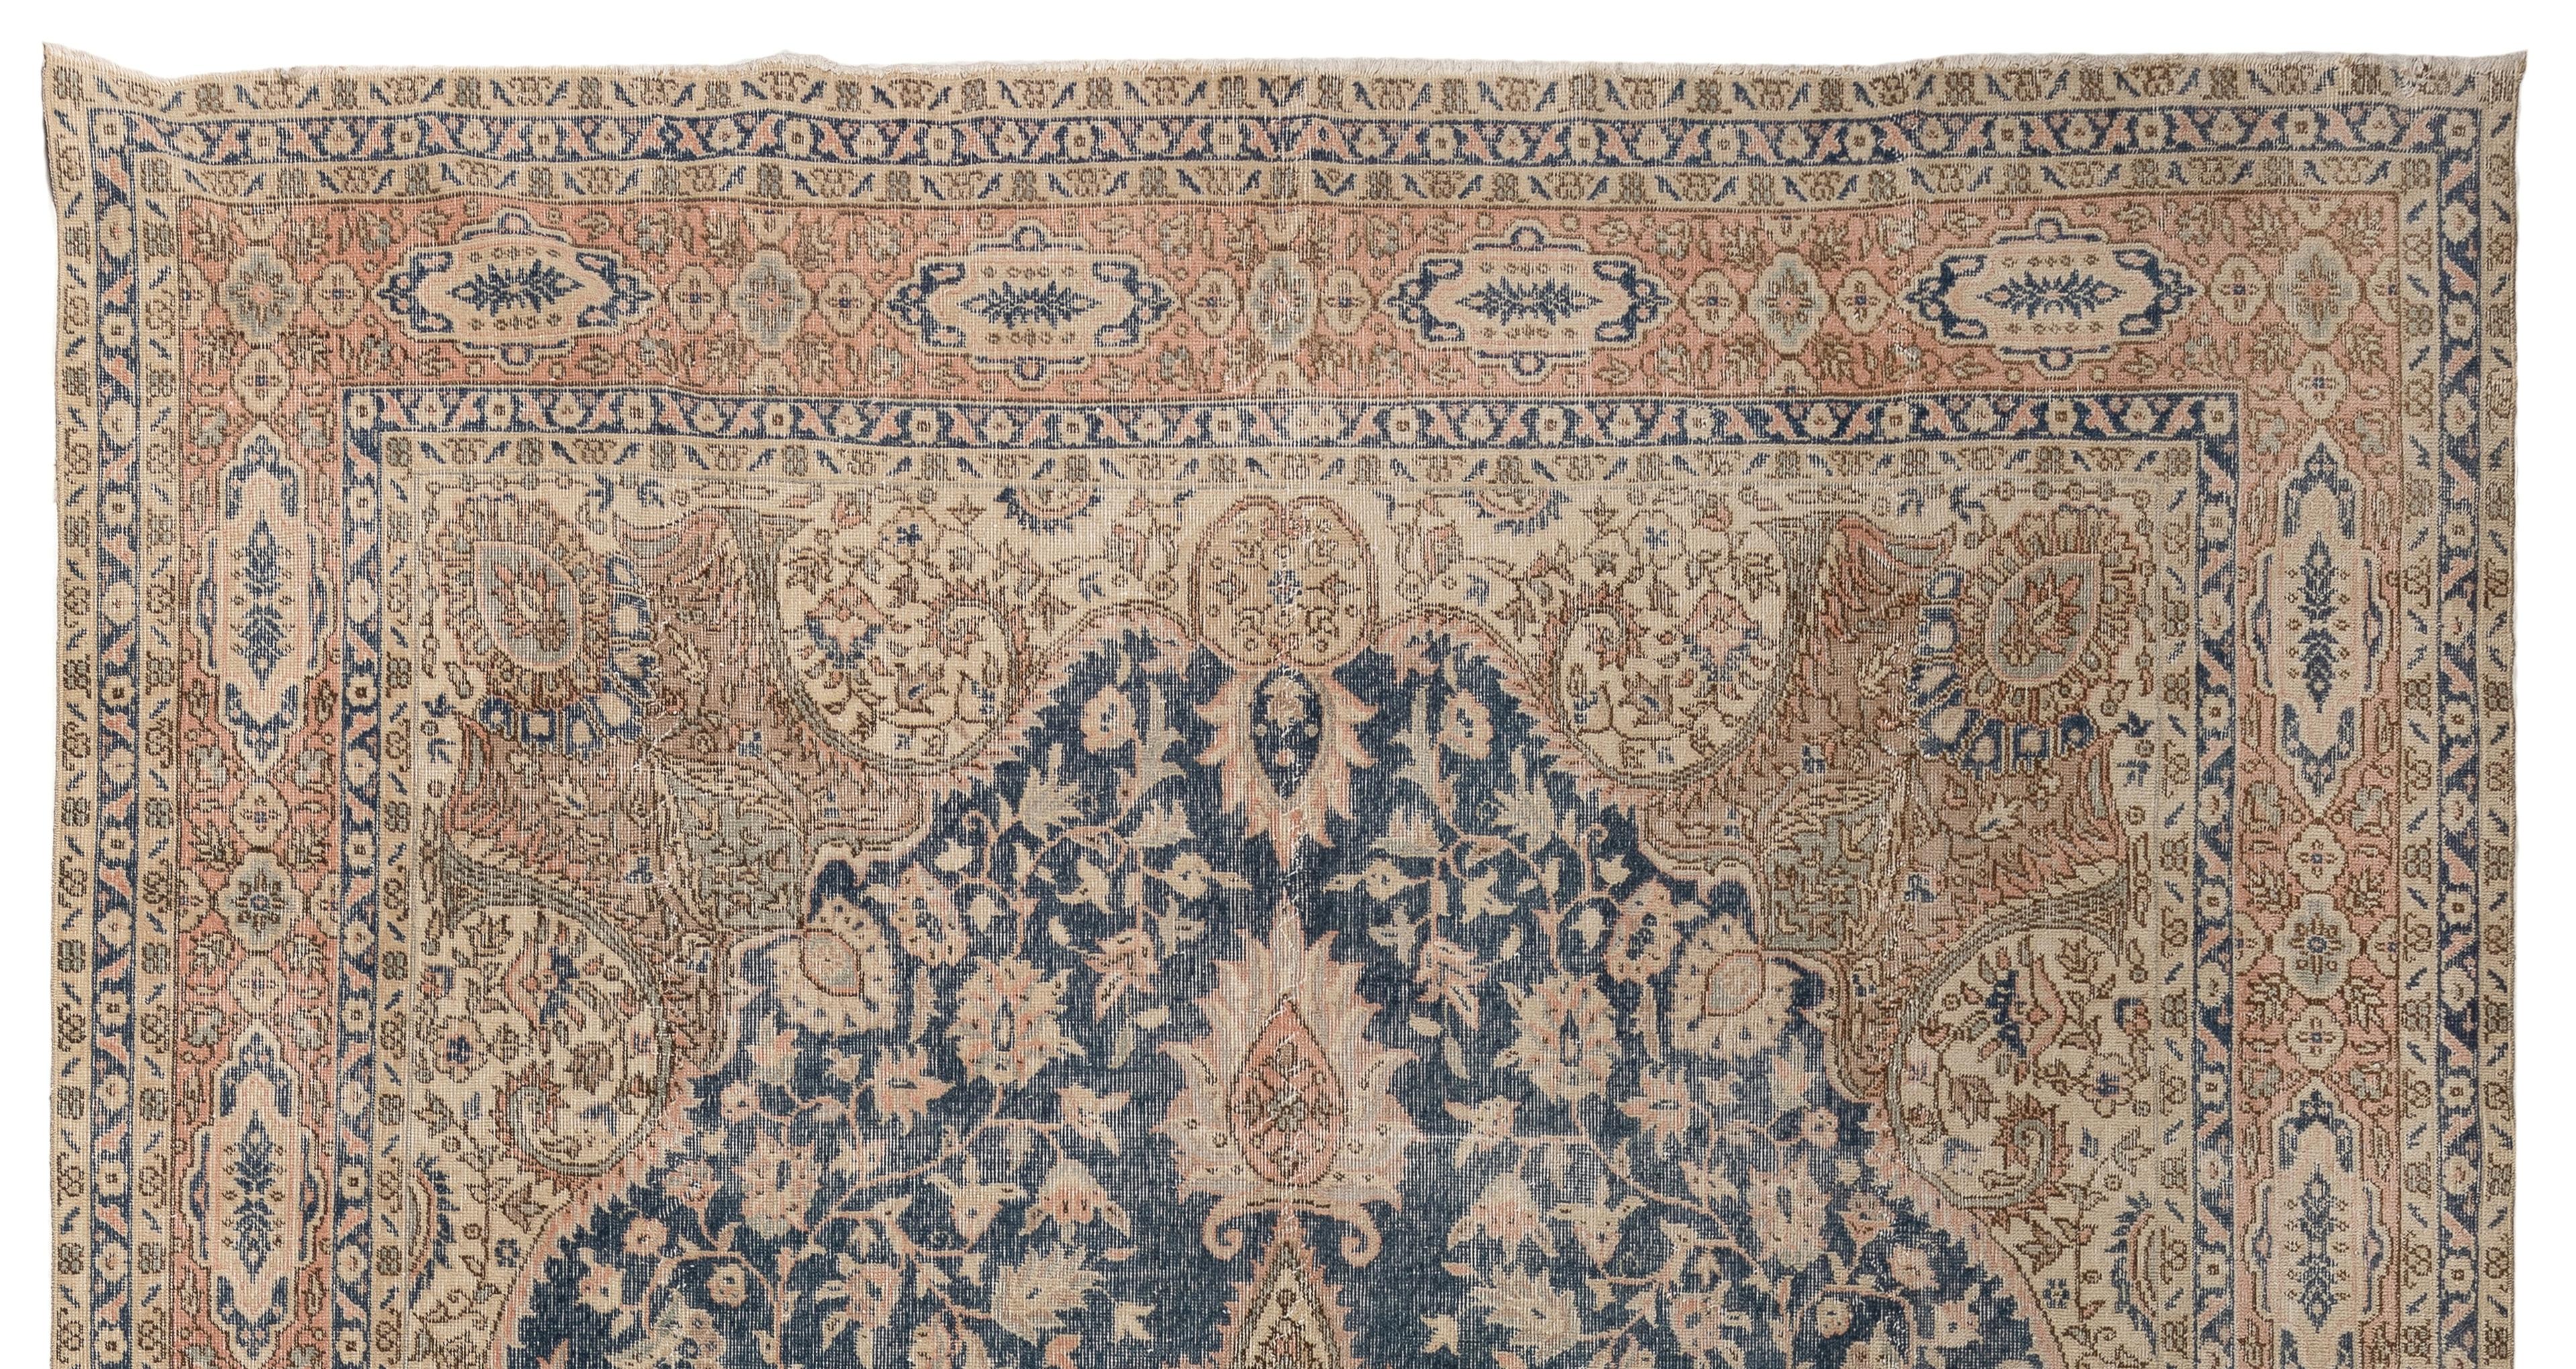 Un grand tapis vintage très finement noué à la main en Turquie dans une palette de couleurs beige pierre, rose saumon, bleu clair et bleu marine. Le motif complexe est très habilement exécuté, du médaillon curviligne au champ de forme similaire dans